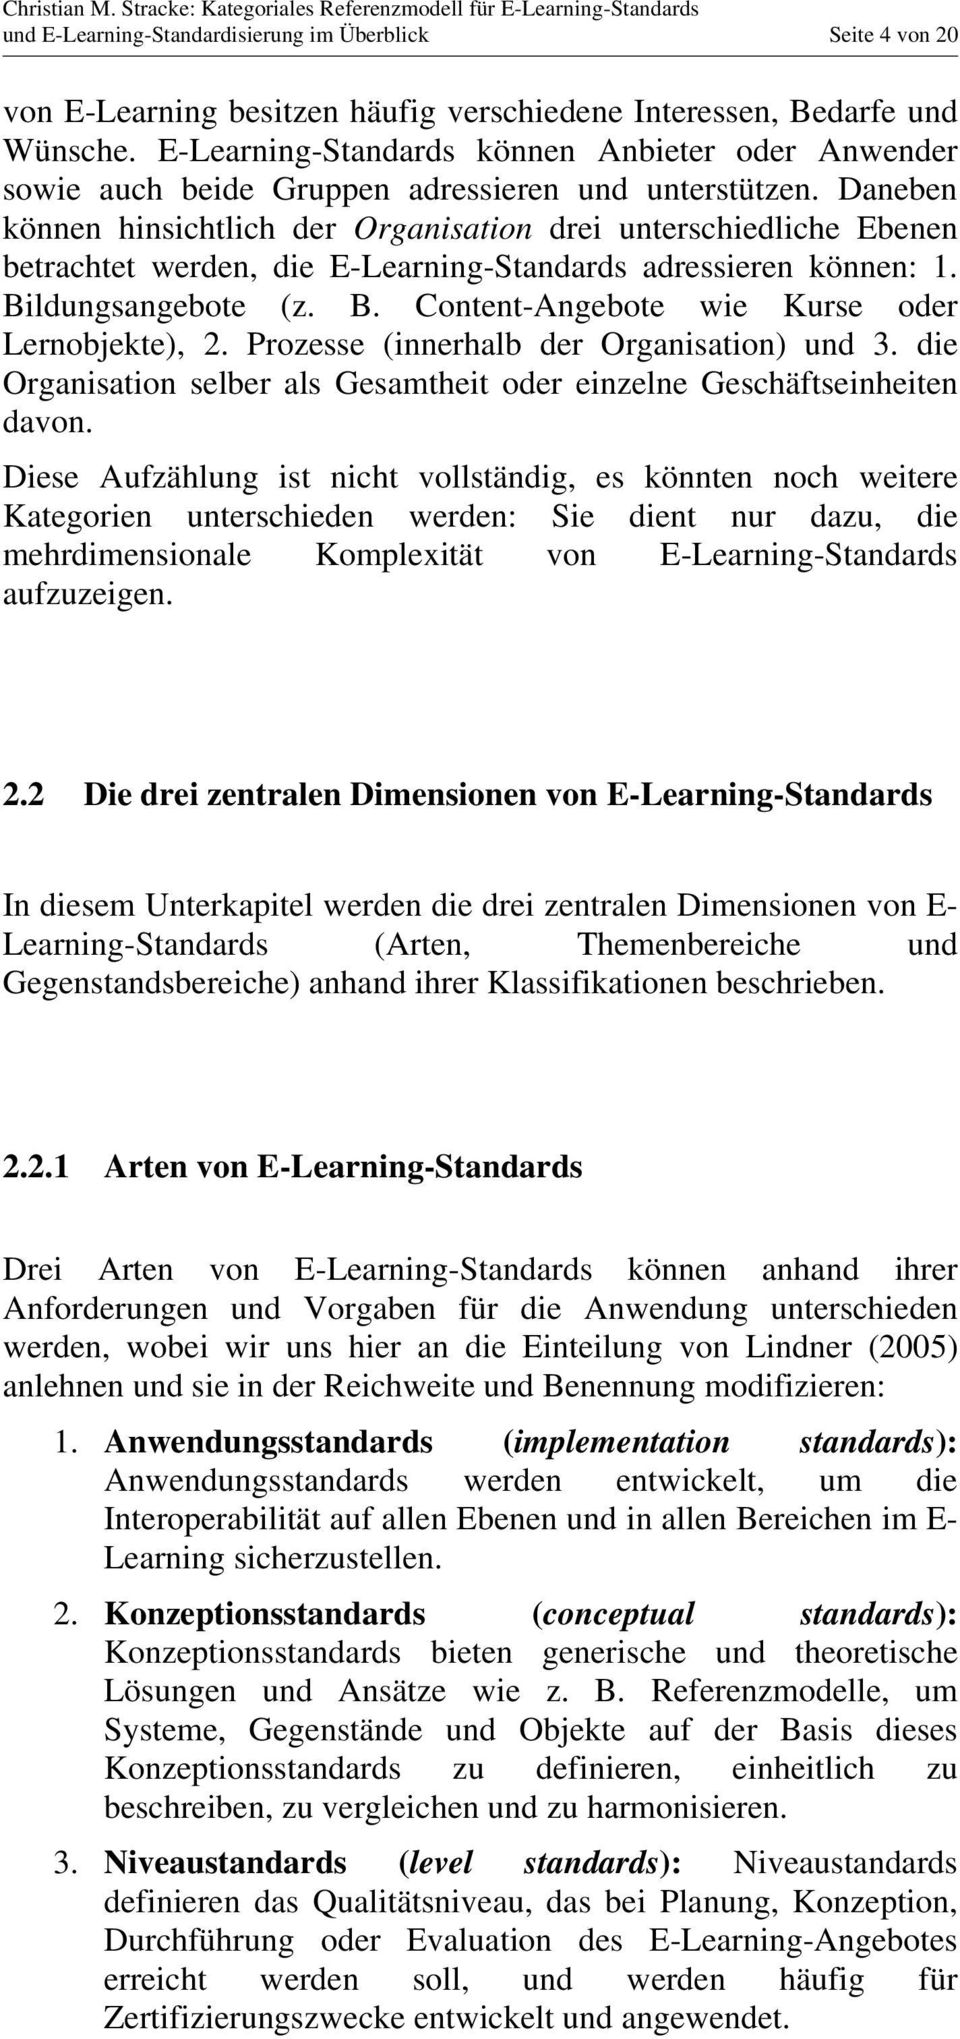 Daneben können hinsichtlich der Organisation drei unterschiedliche Ebenen betrachtet werden, die E-Learning-Standards adressieren können: 1. Bildungsangebote (z. B. Content-Angebote wie Kurse oder Lernobjekte), 2.